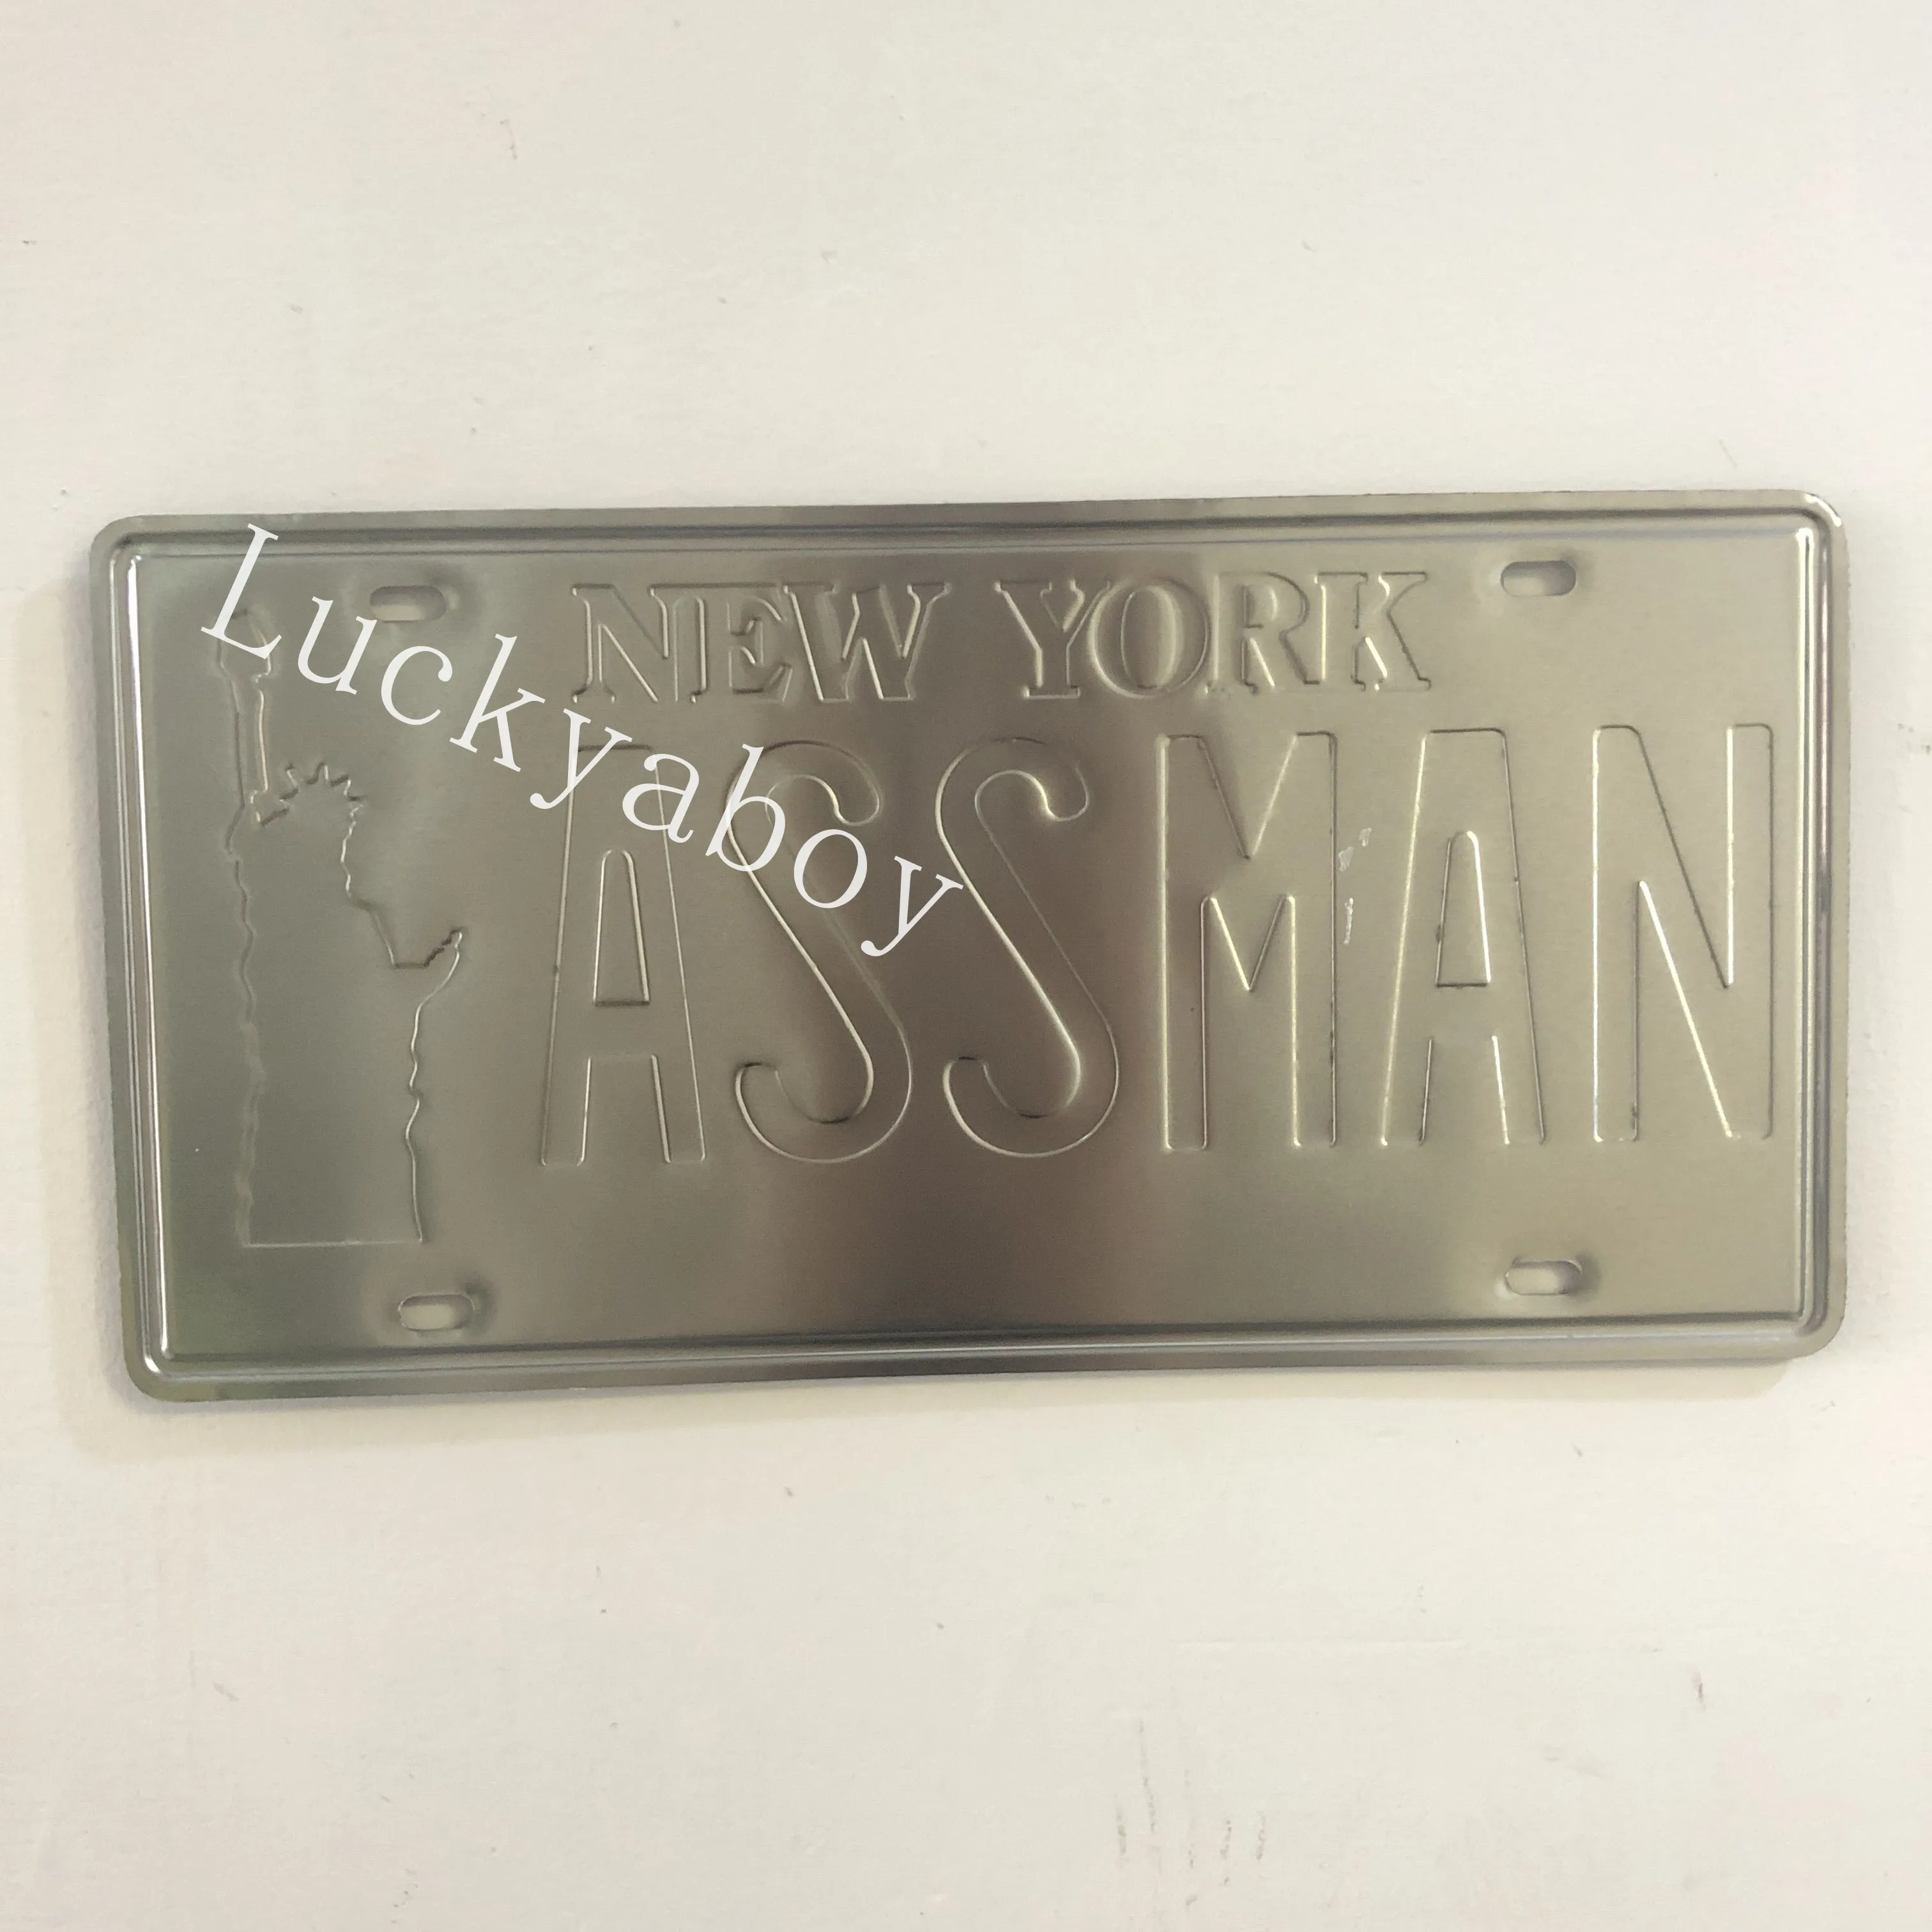 [Luckyaboy] Нью-Йорк АССМАН тисненый 3D Ретро номерной знак металлическая Оловянная вывеска винтажная пивная домашняя пластины с ретро рисунками для гаража, кафе декоративная тарелка